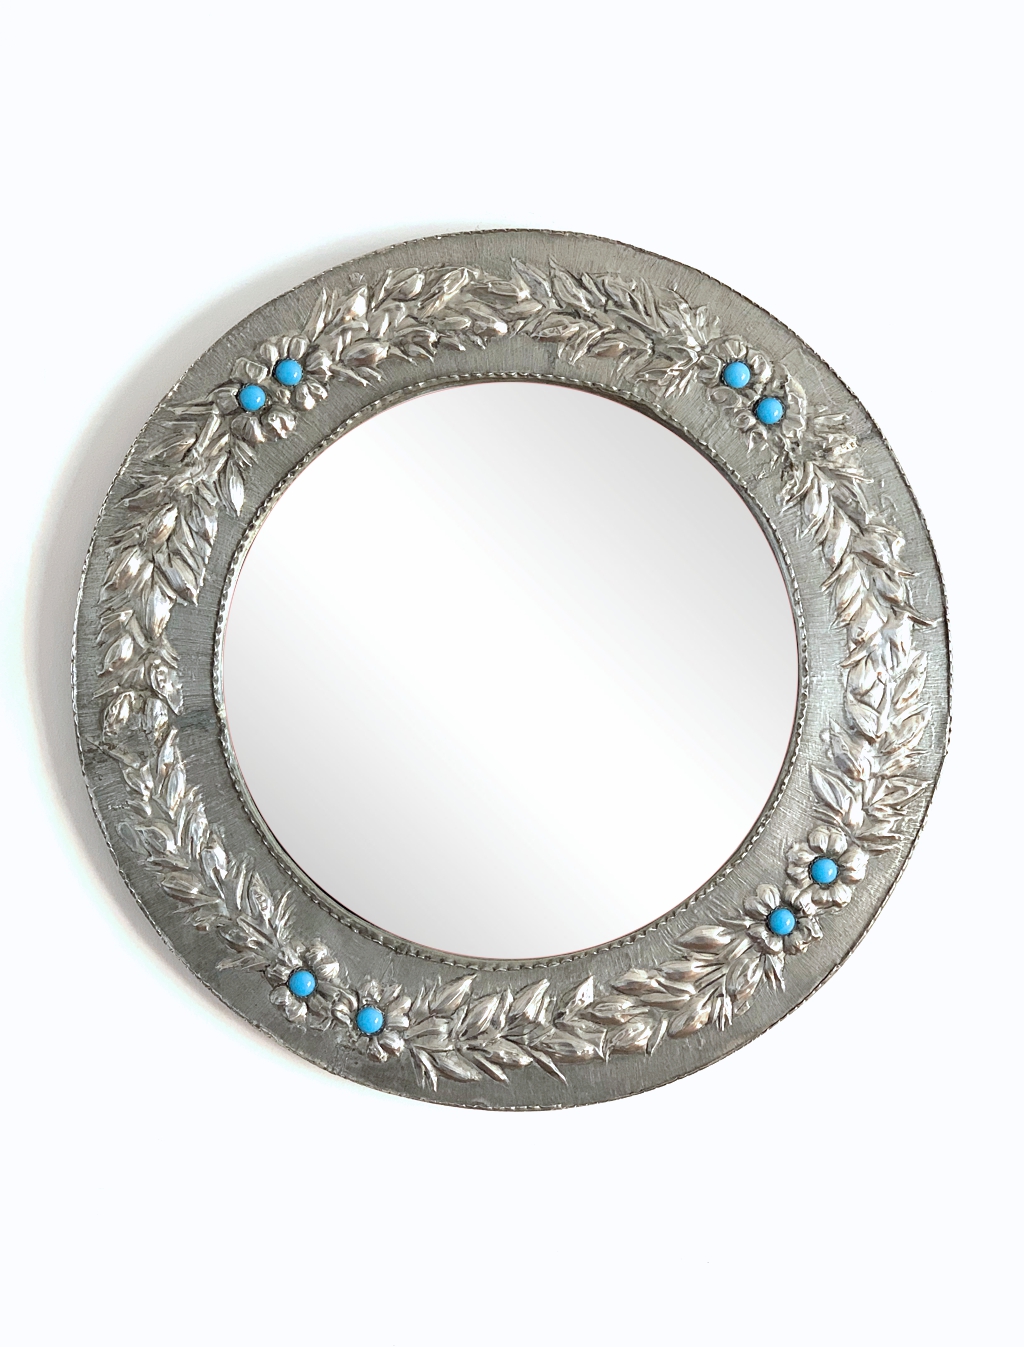 GUIRNALDAS DE ESTAÑO - Espejo con marco de estaño tallado a mano con  guirnaldas y flores azules. Vintage 50s-60s. /